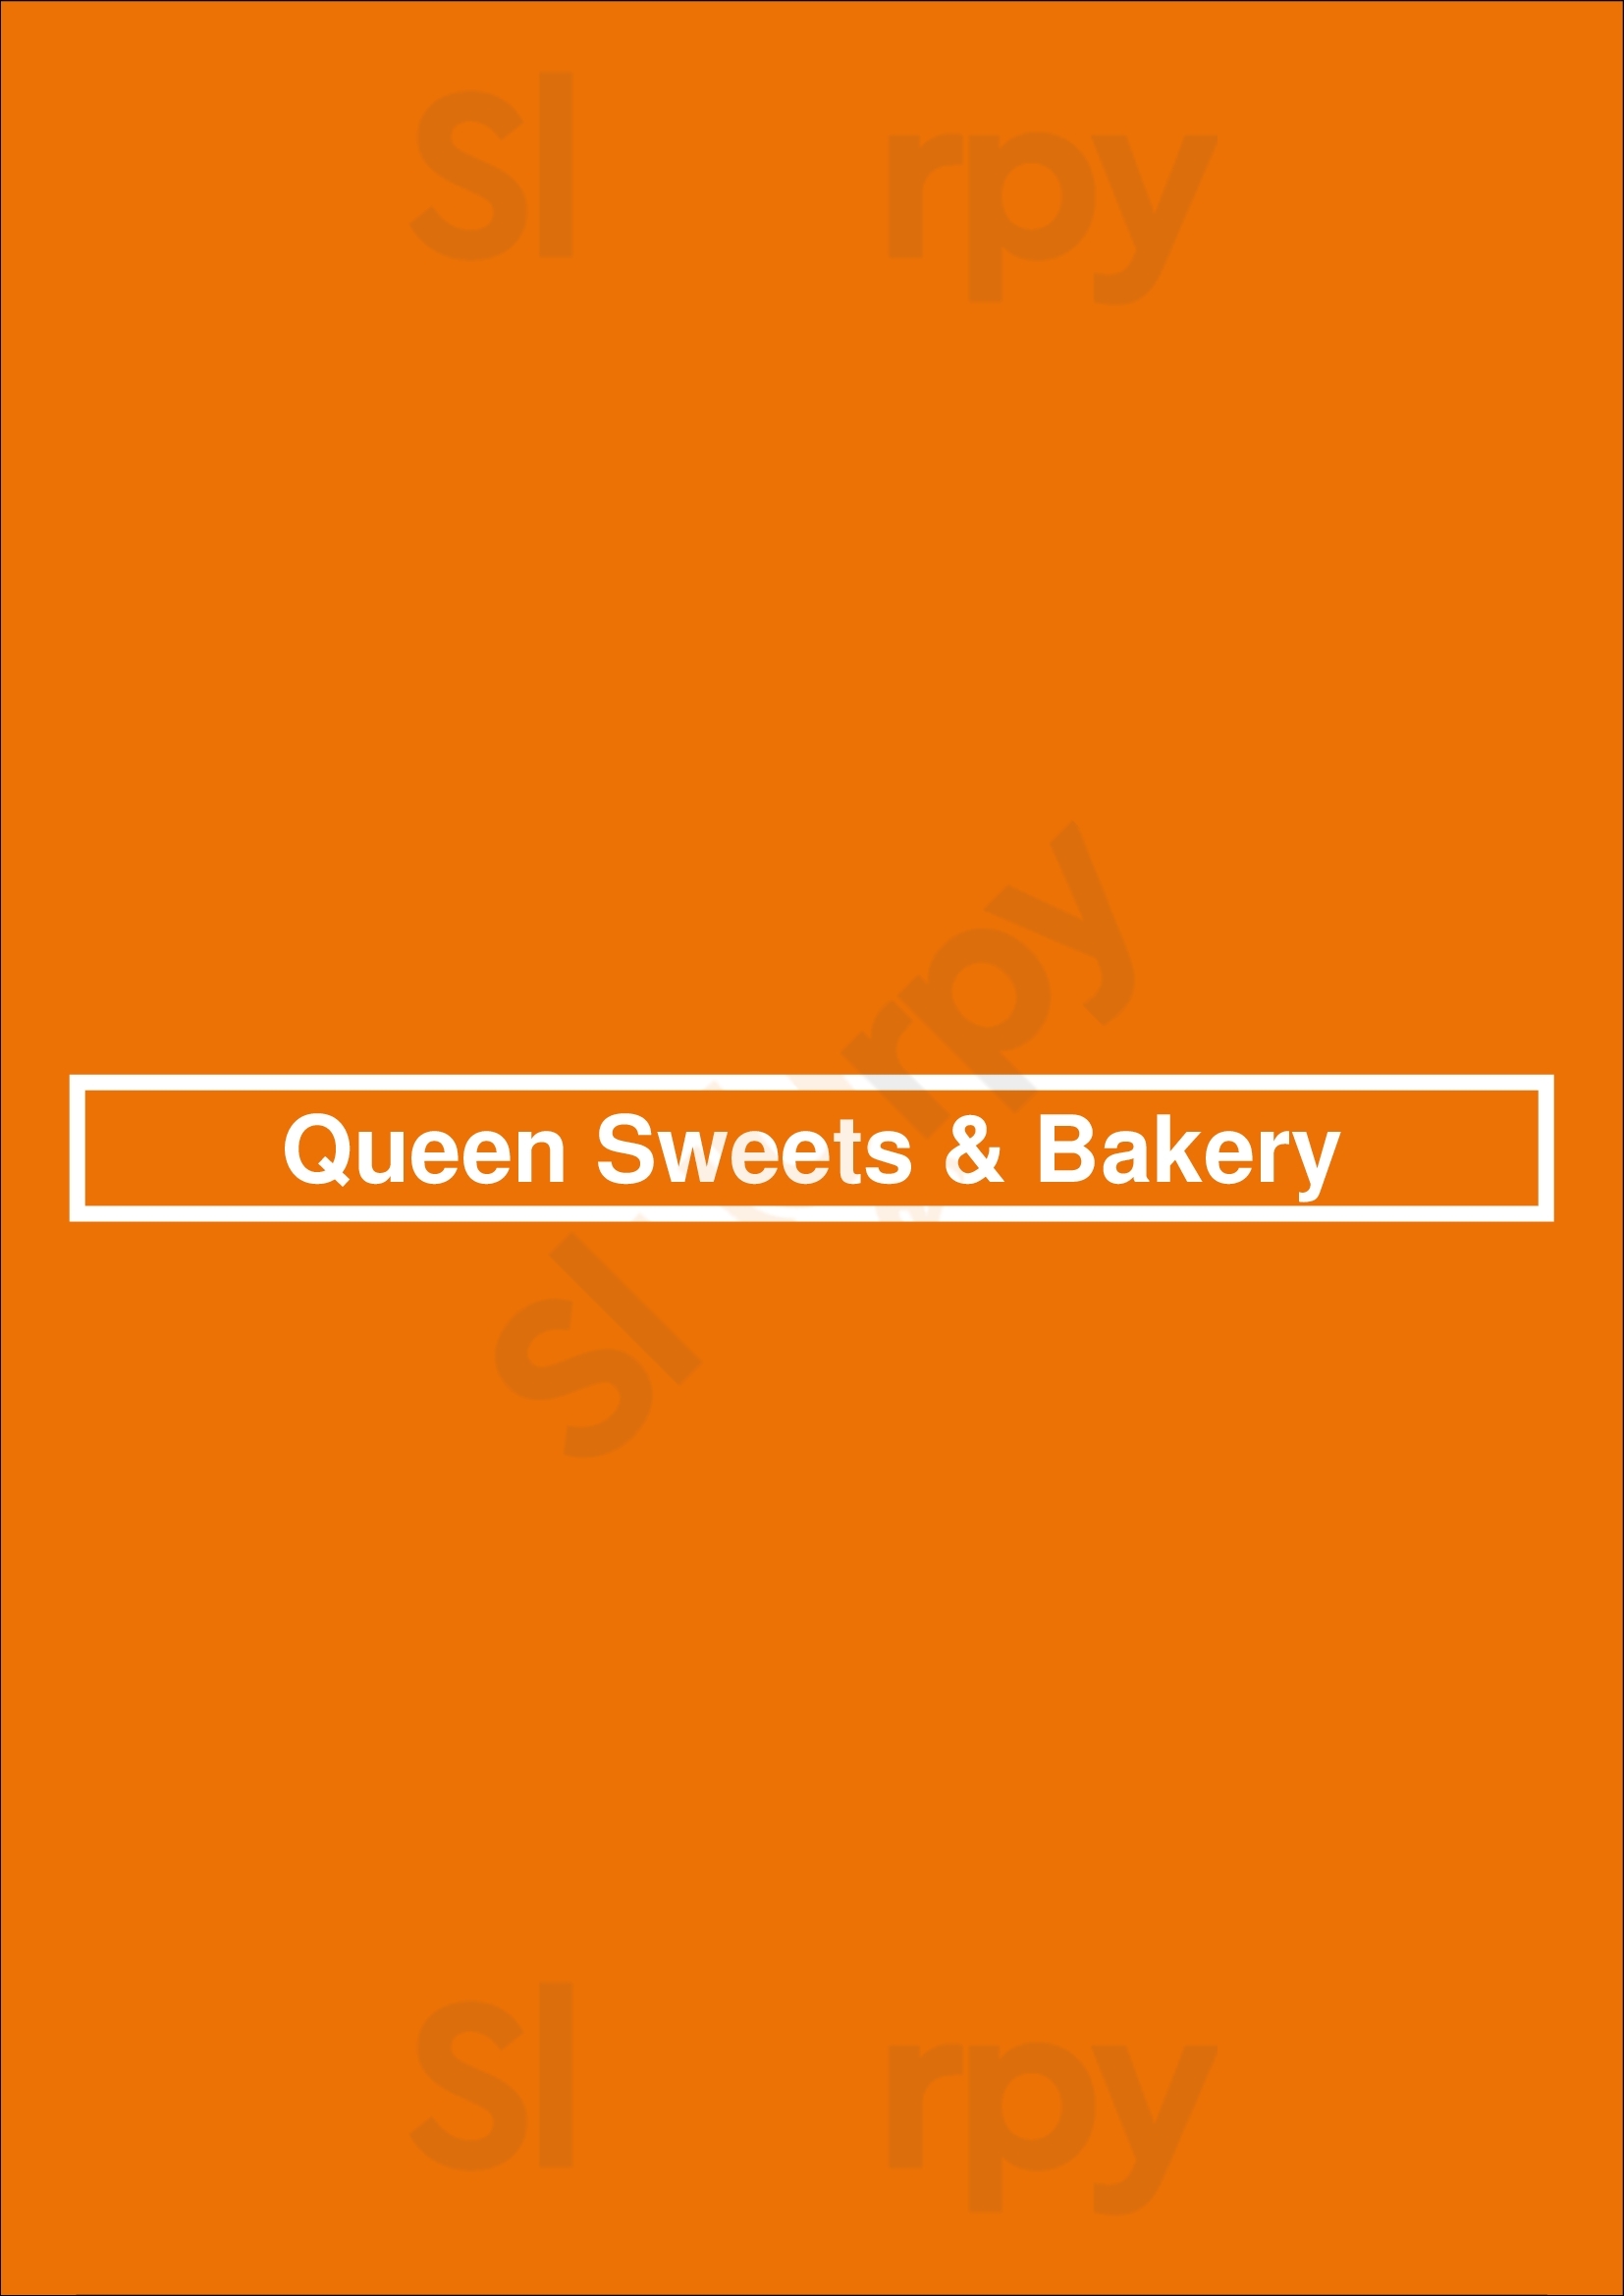 Queen Sweets & Bakery Kansas City Menu - 1